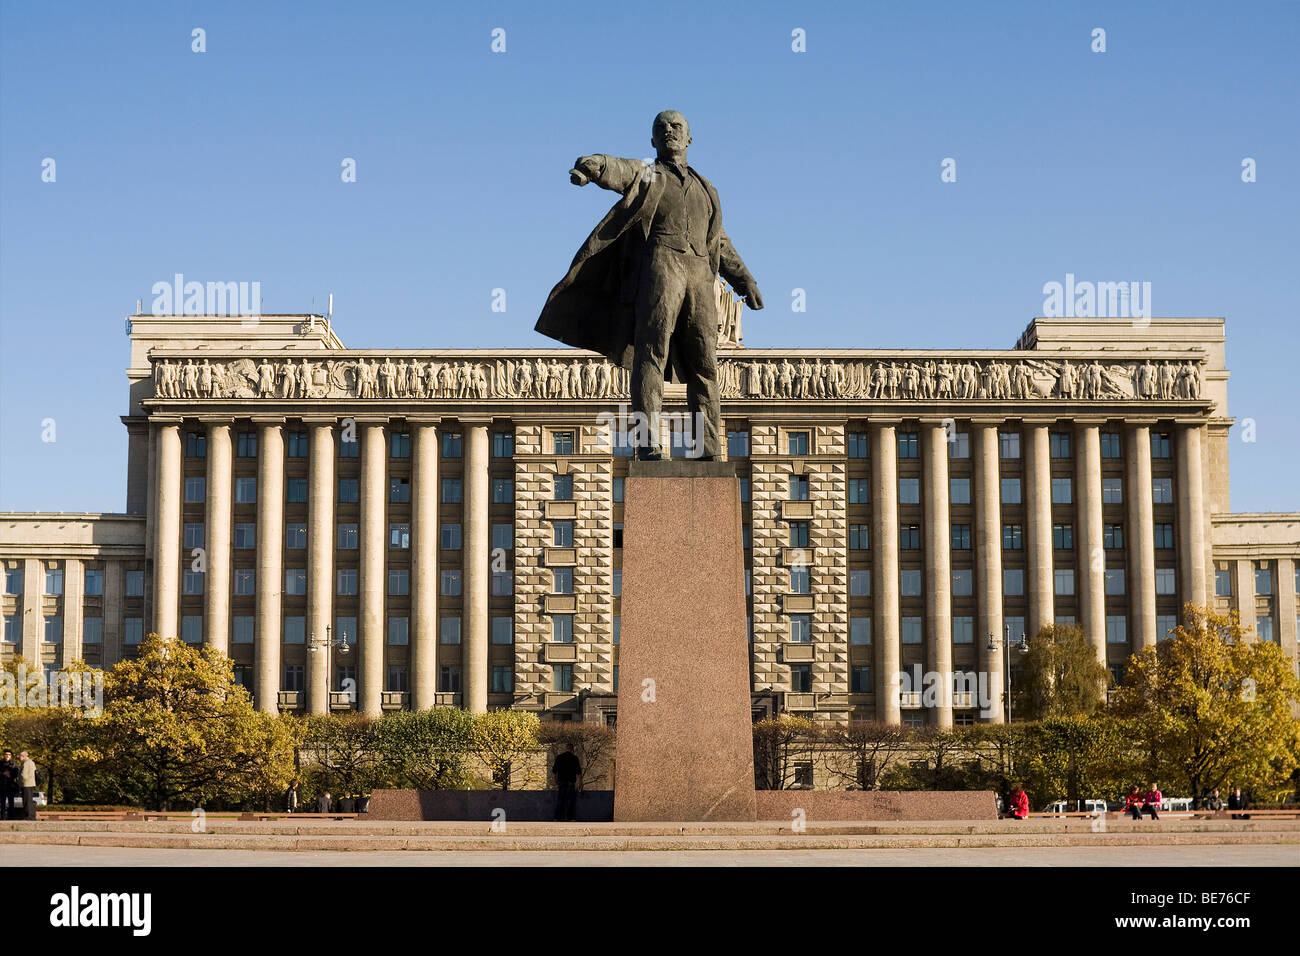 Monument de Vladimir Lénine par Mikhail Anikushin Moskovskaya square, à Saint-Pétersbourg, Russie Banque D'Images